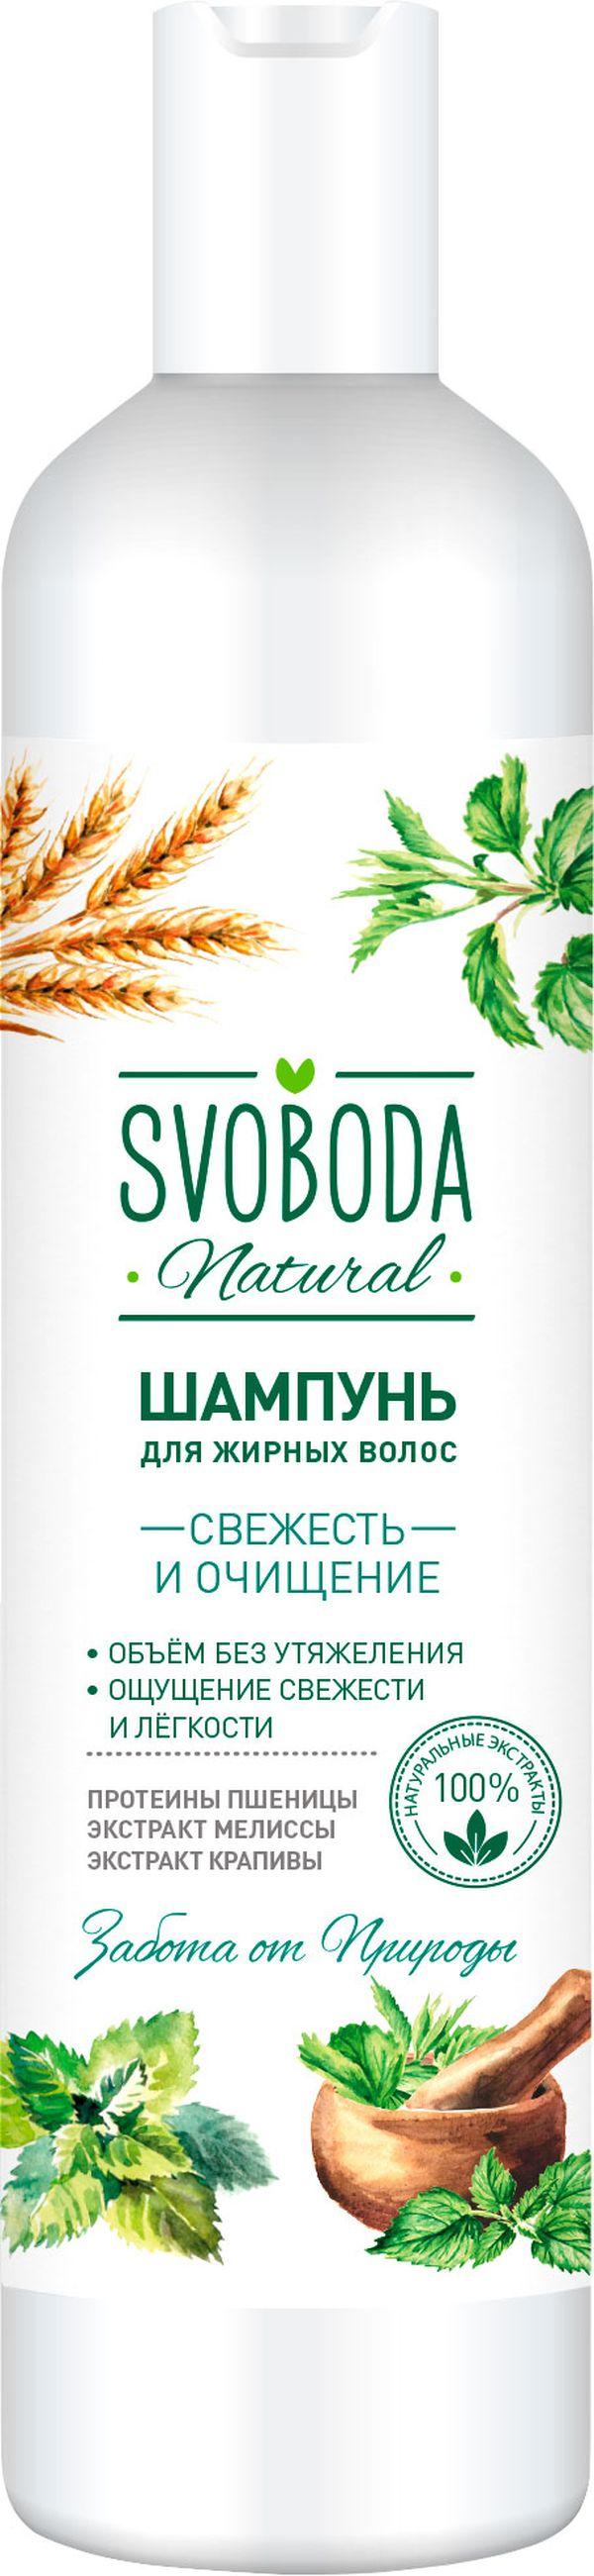 Шампунь Svoboda для жирных волос протеин пшеницы мелисса крапива 430мл